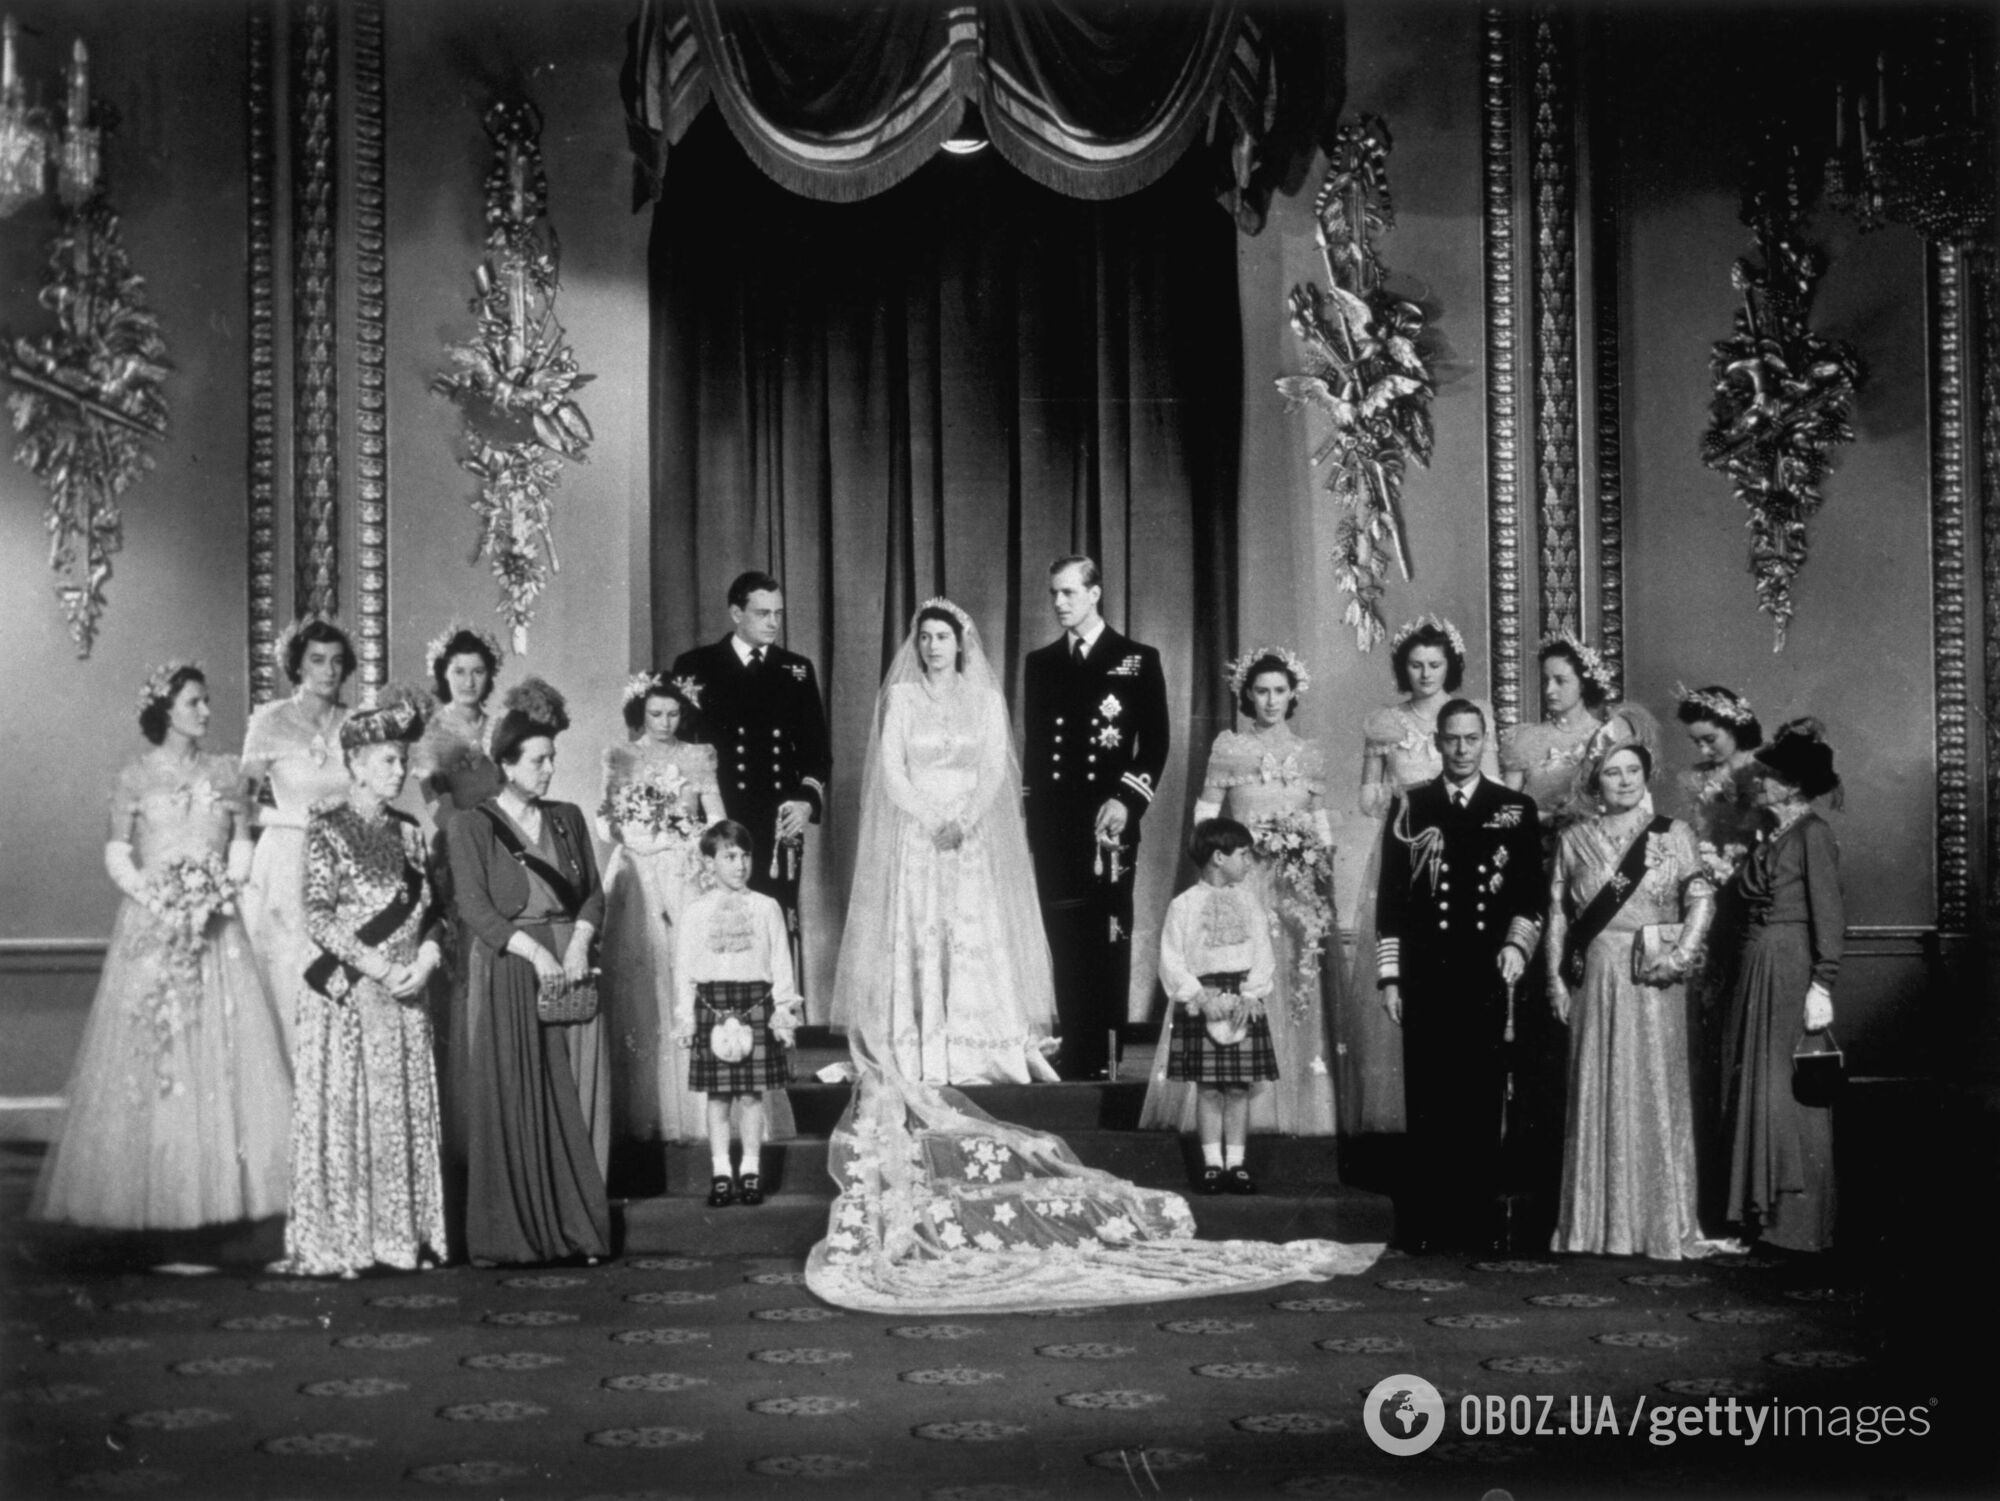 Архивный кадр со свадьбы Елизаветы II, где она без букета